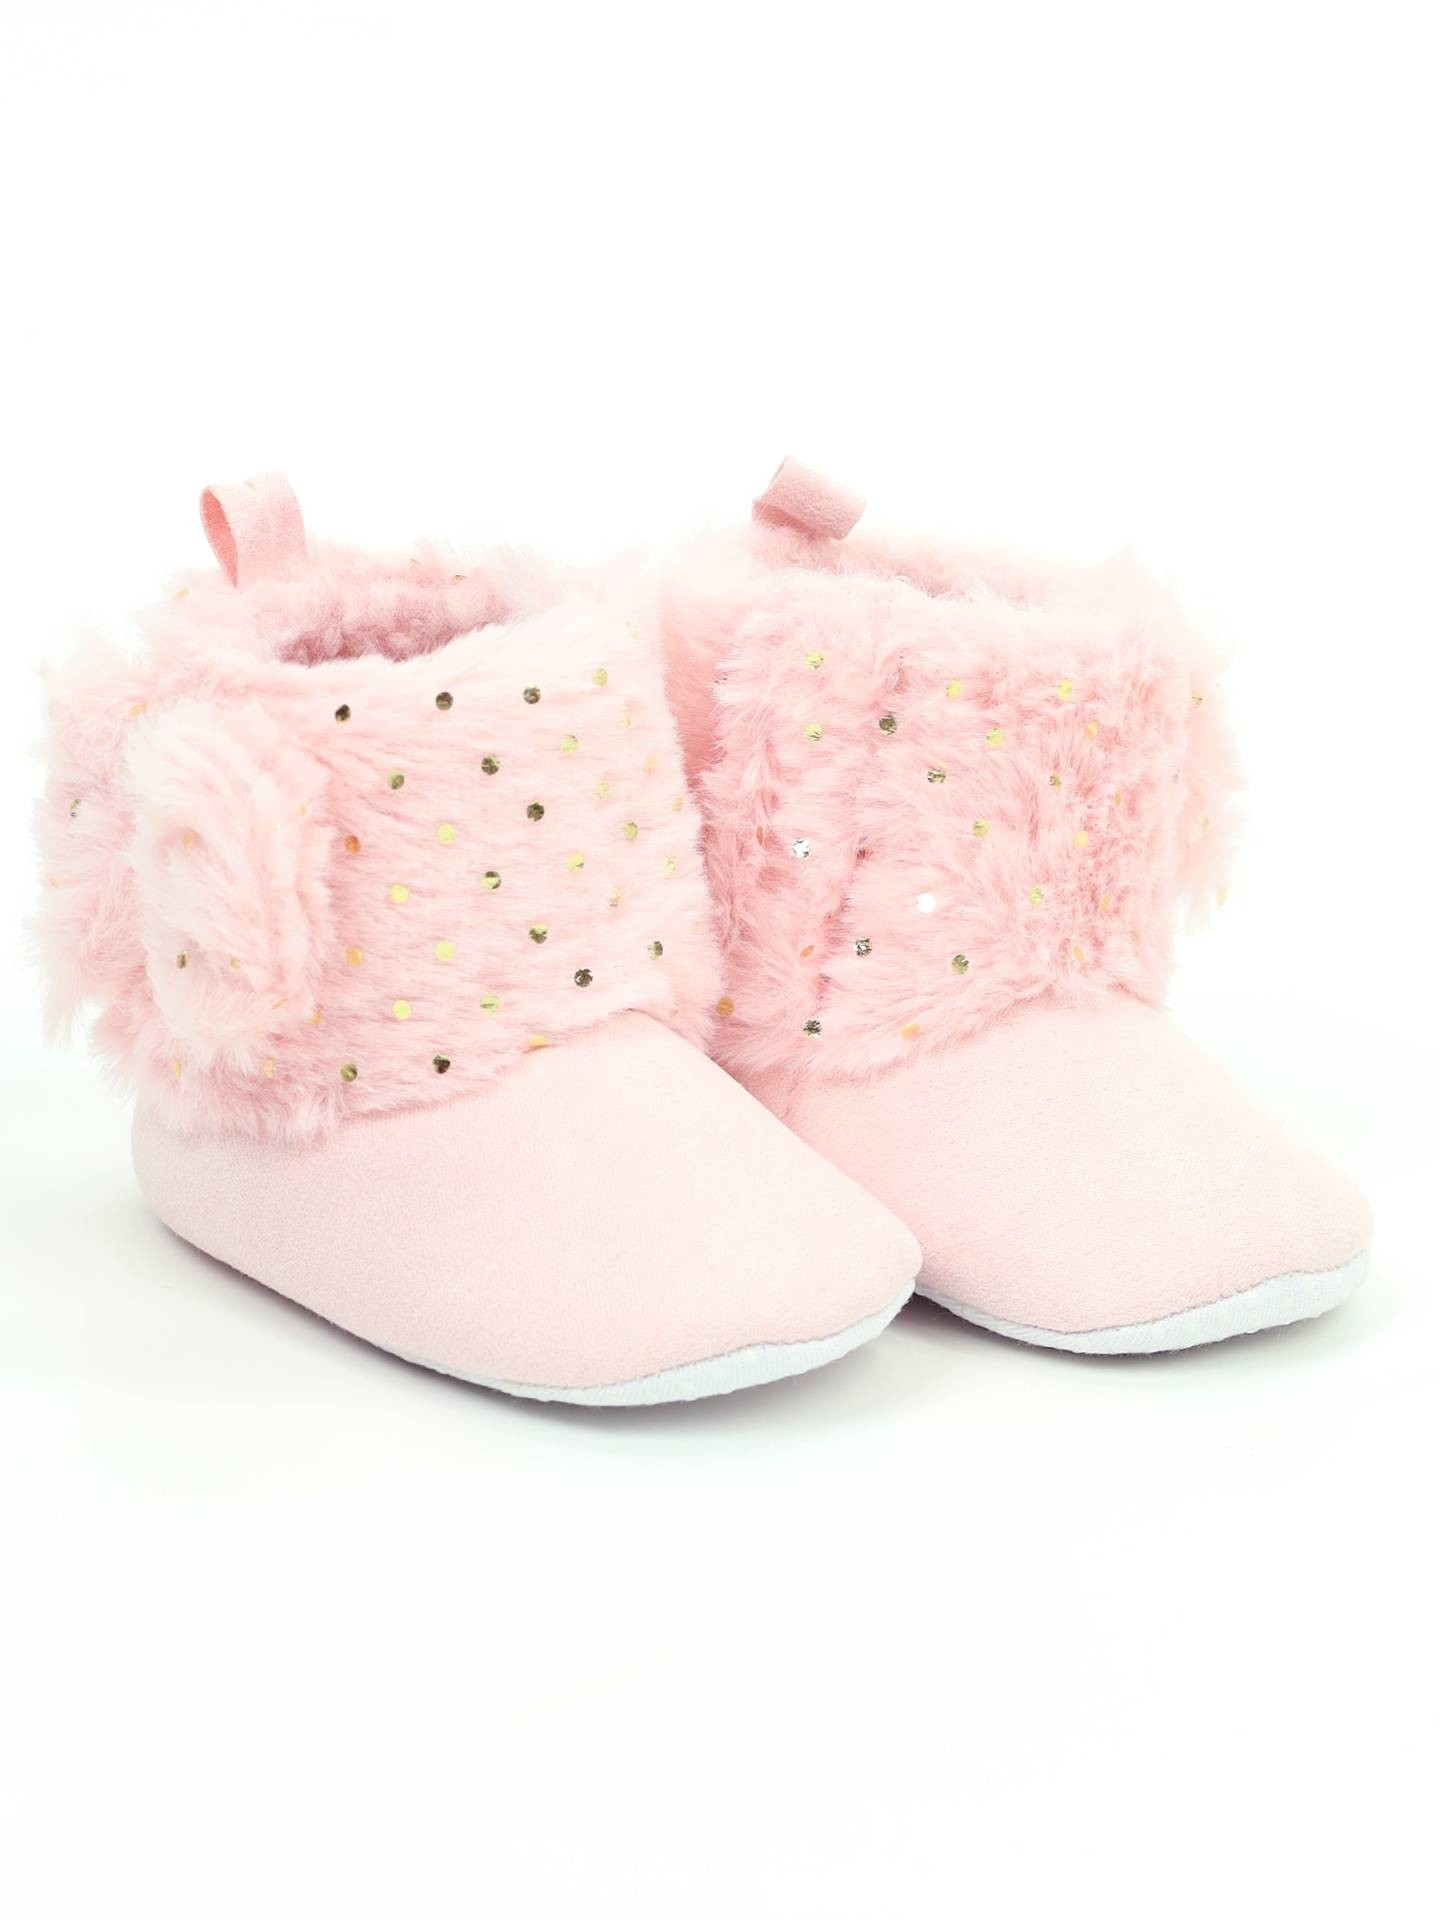 Yoclub Dětské dívčí boty OBO-0020G-4600 Powder Pink 6-12 měsíců